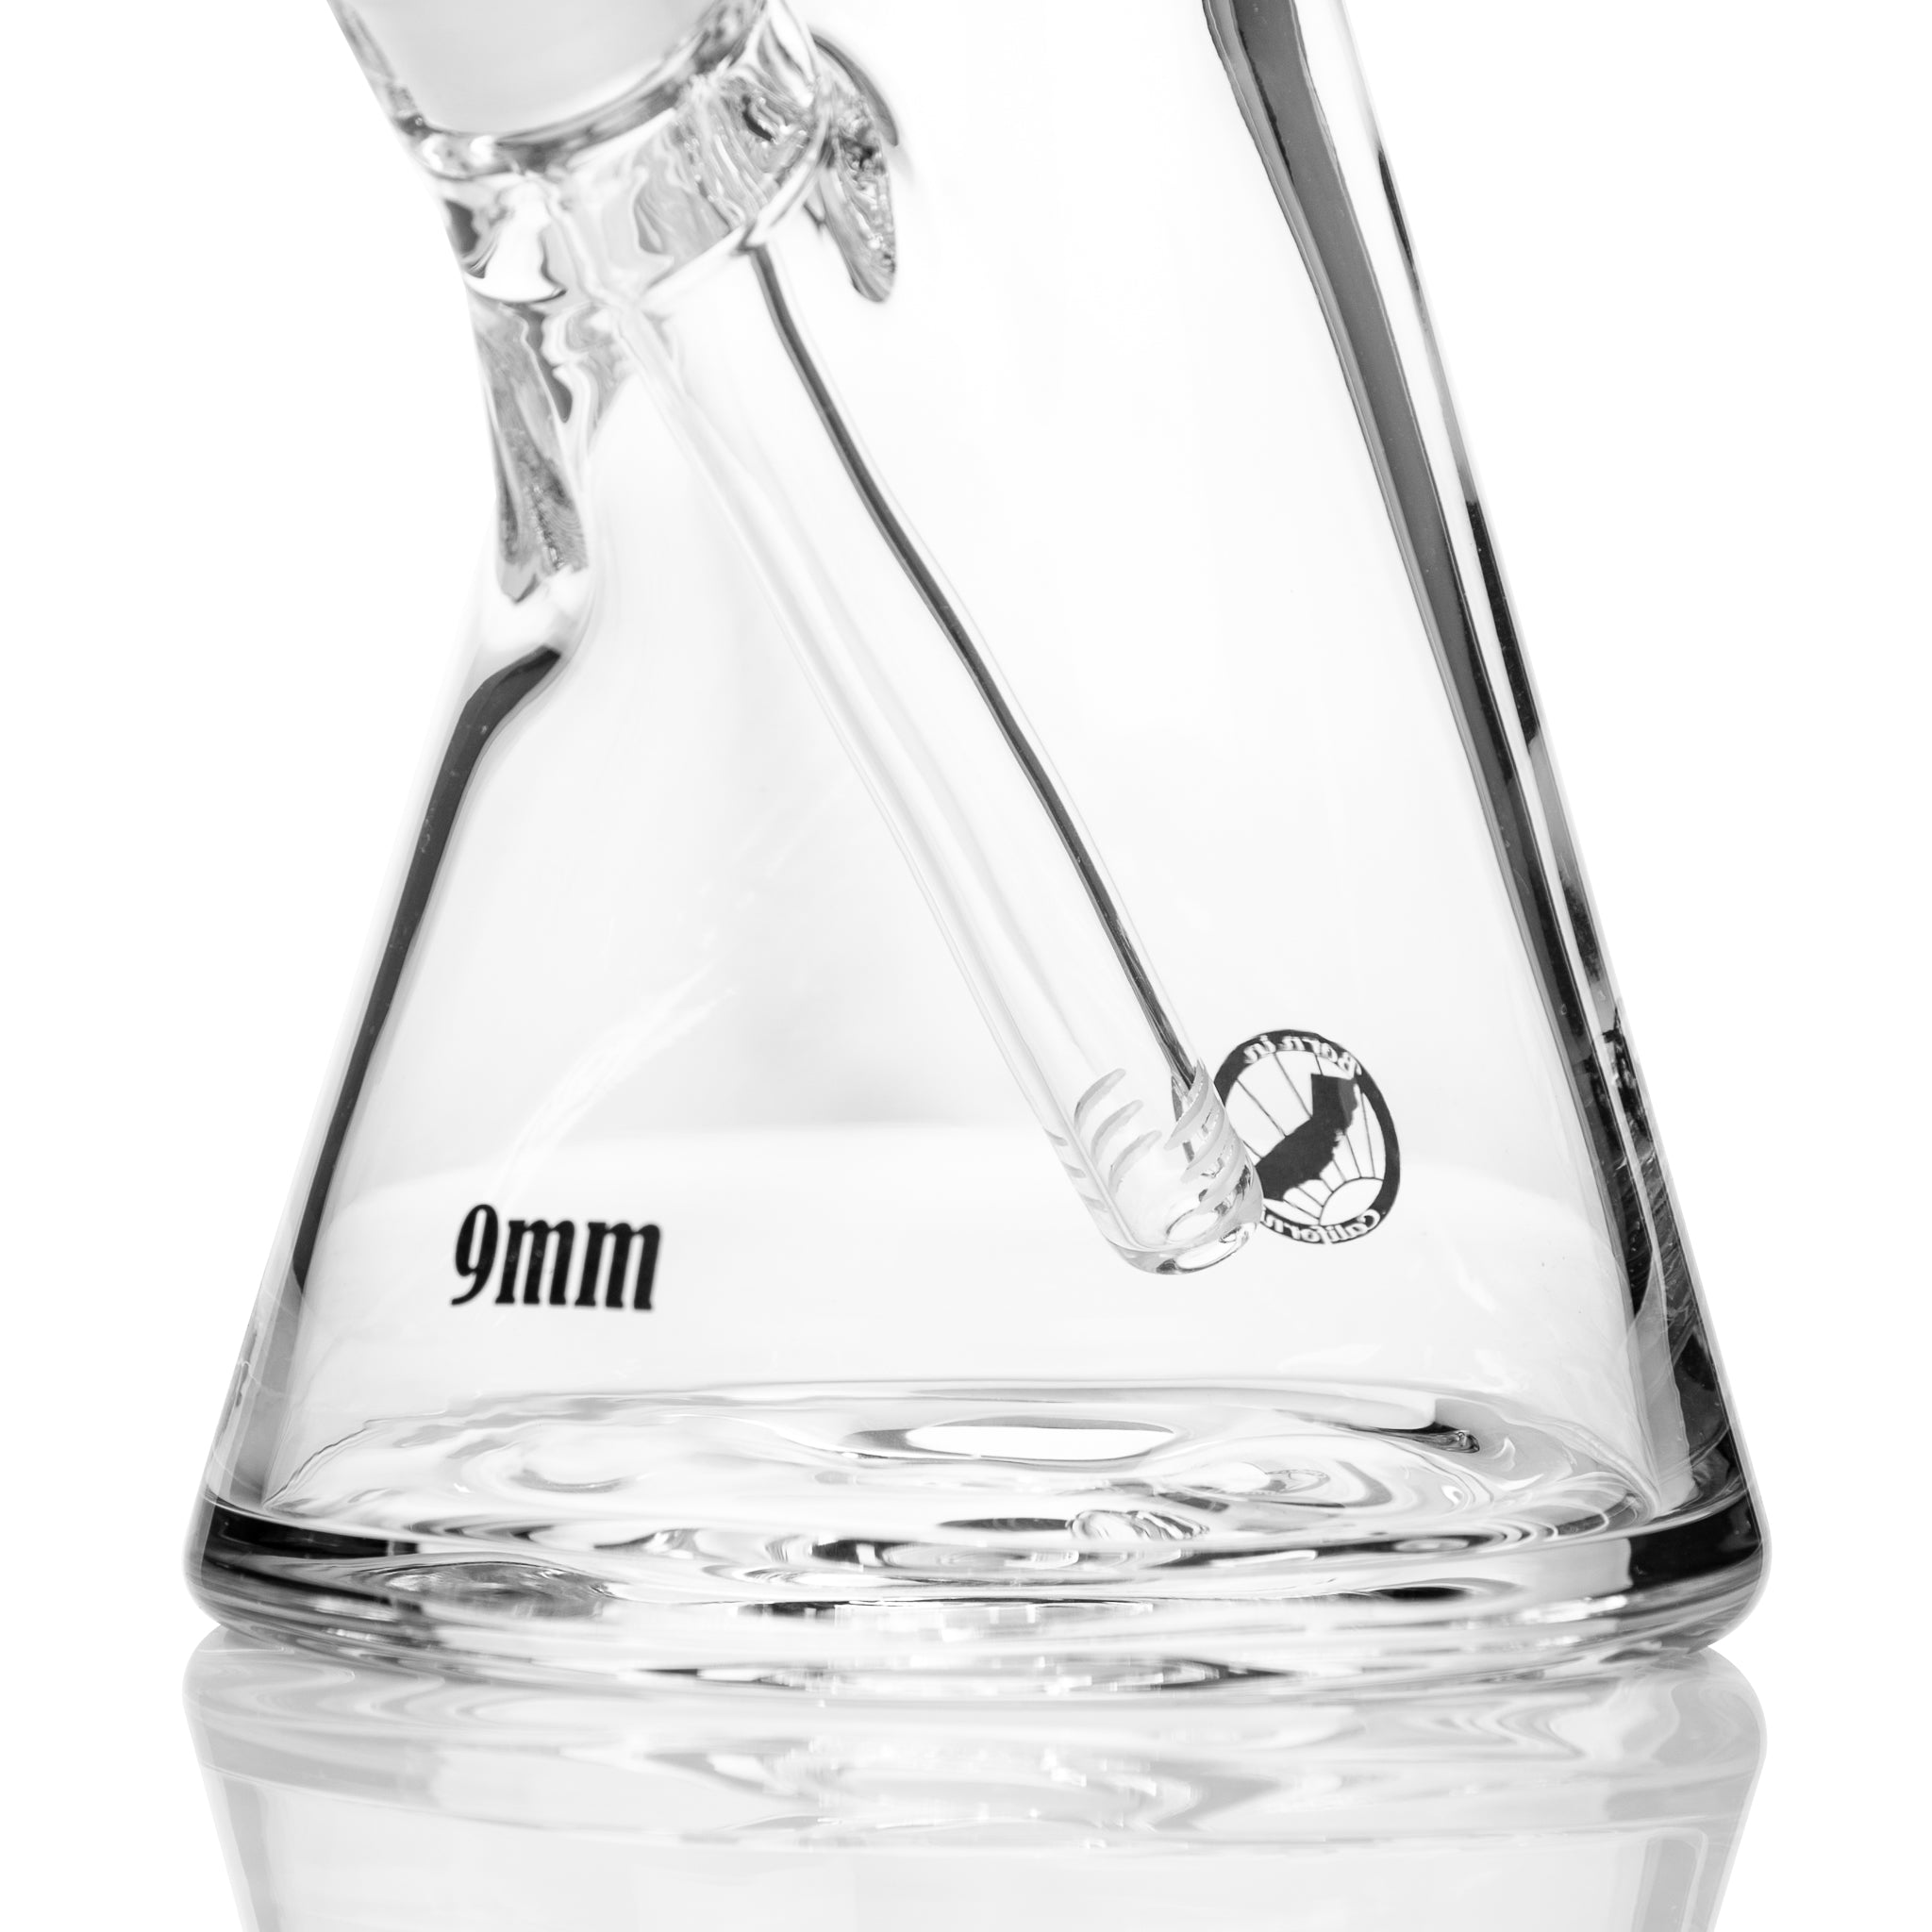 9mm thick glass beaker bongs.